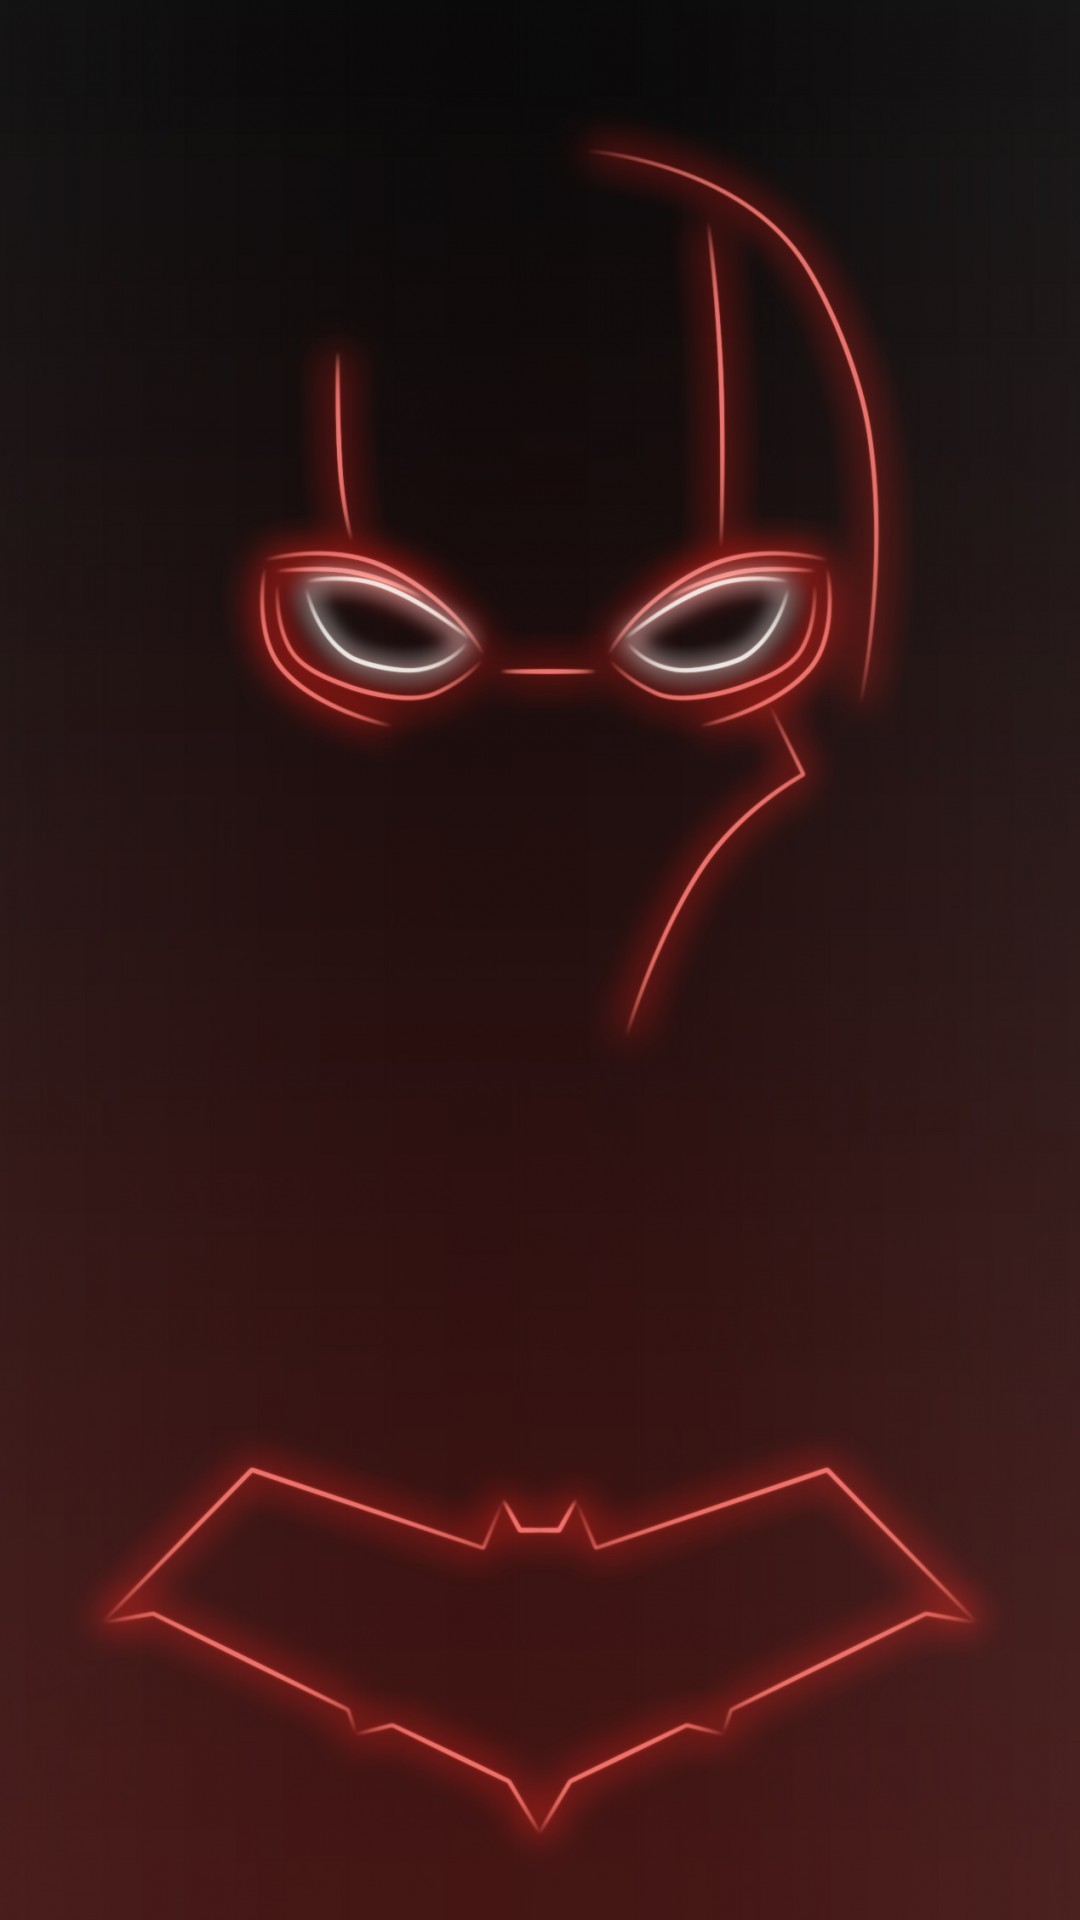 1080x1920 Download Neon Light Red Hood 1080 x 1920 Wallpapers - 4644320 - neon light  superhero comics